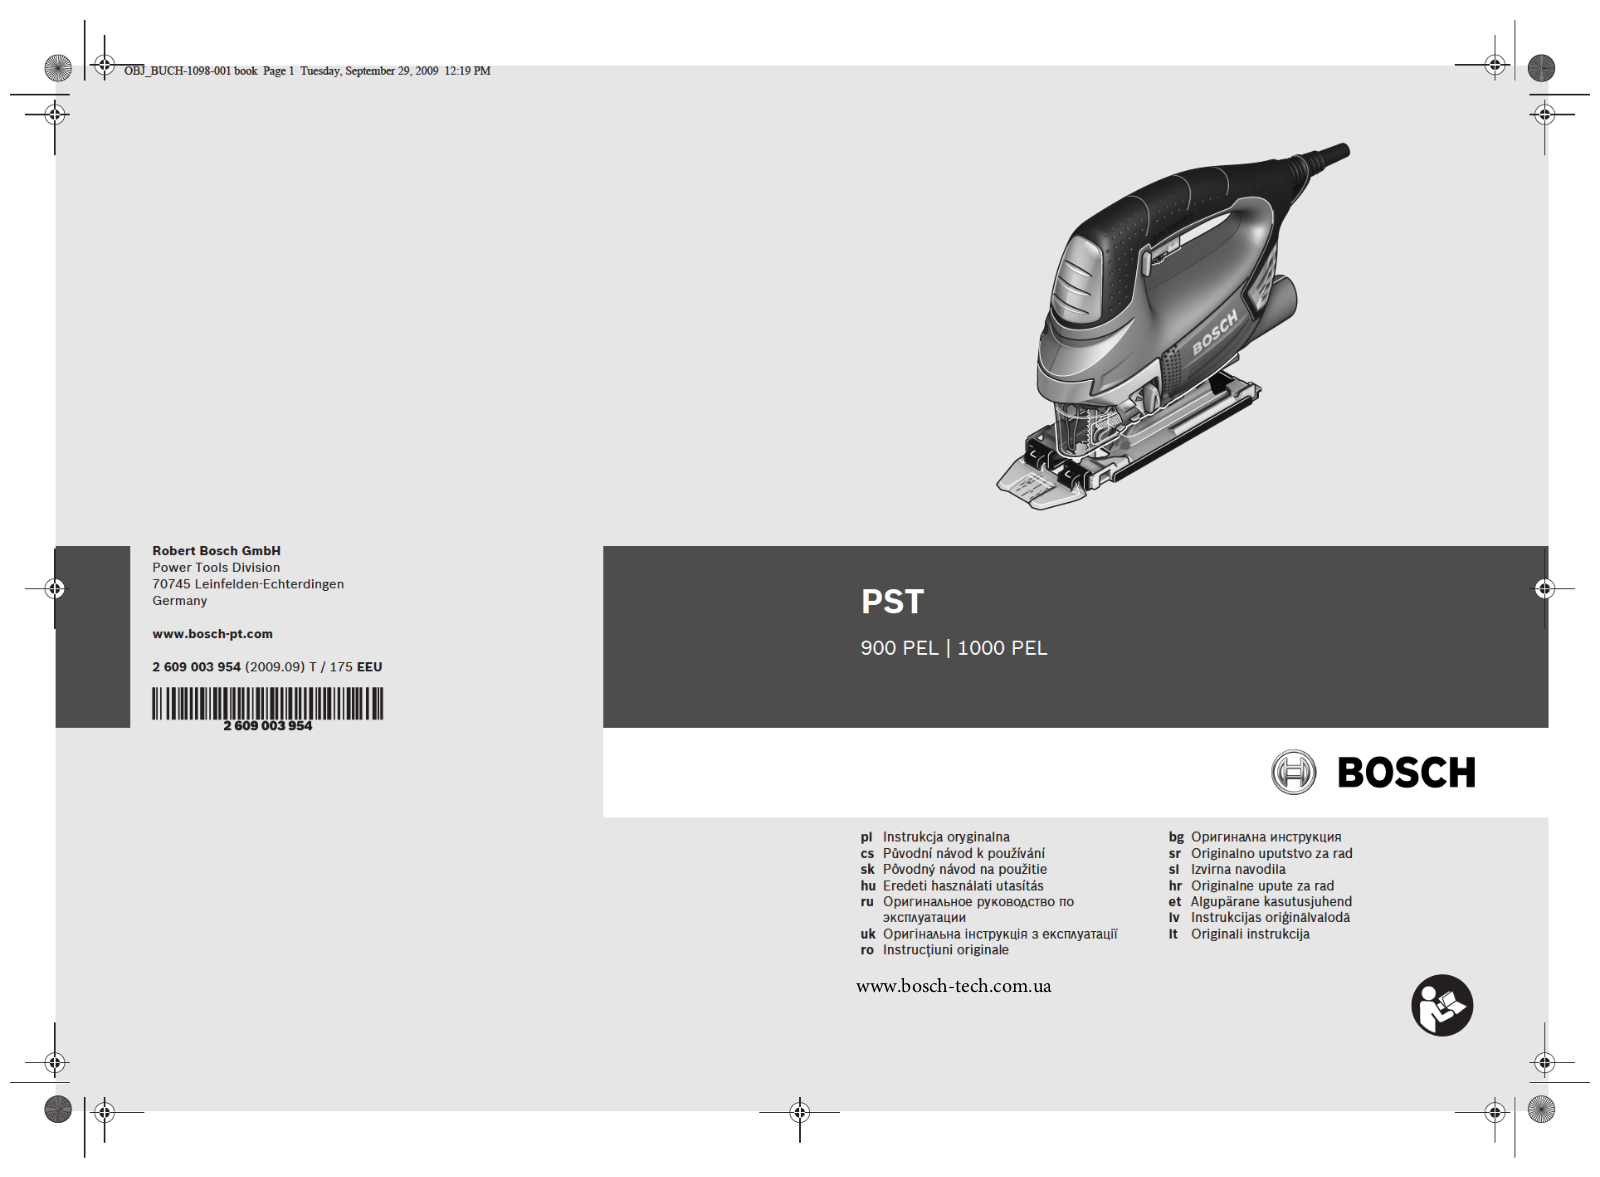 Bosch PST 900 PEL User Manual